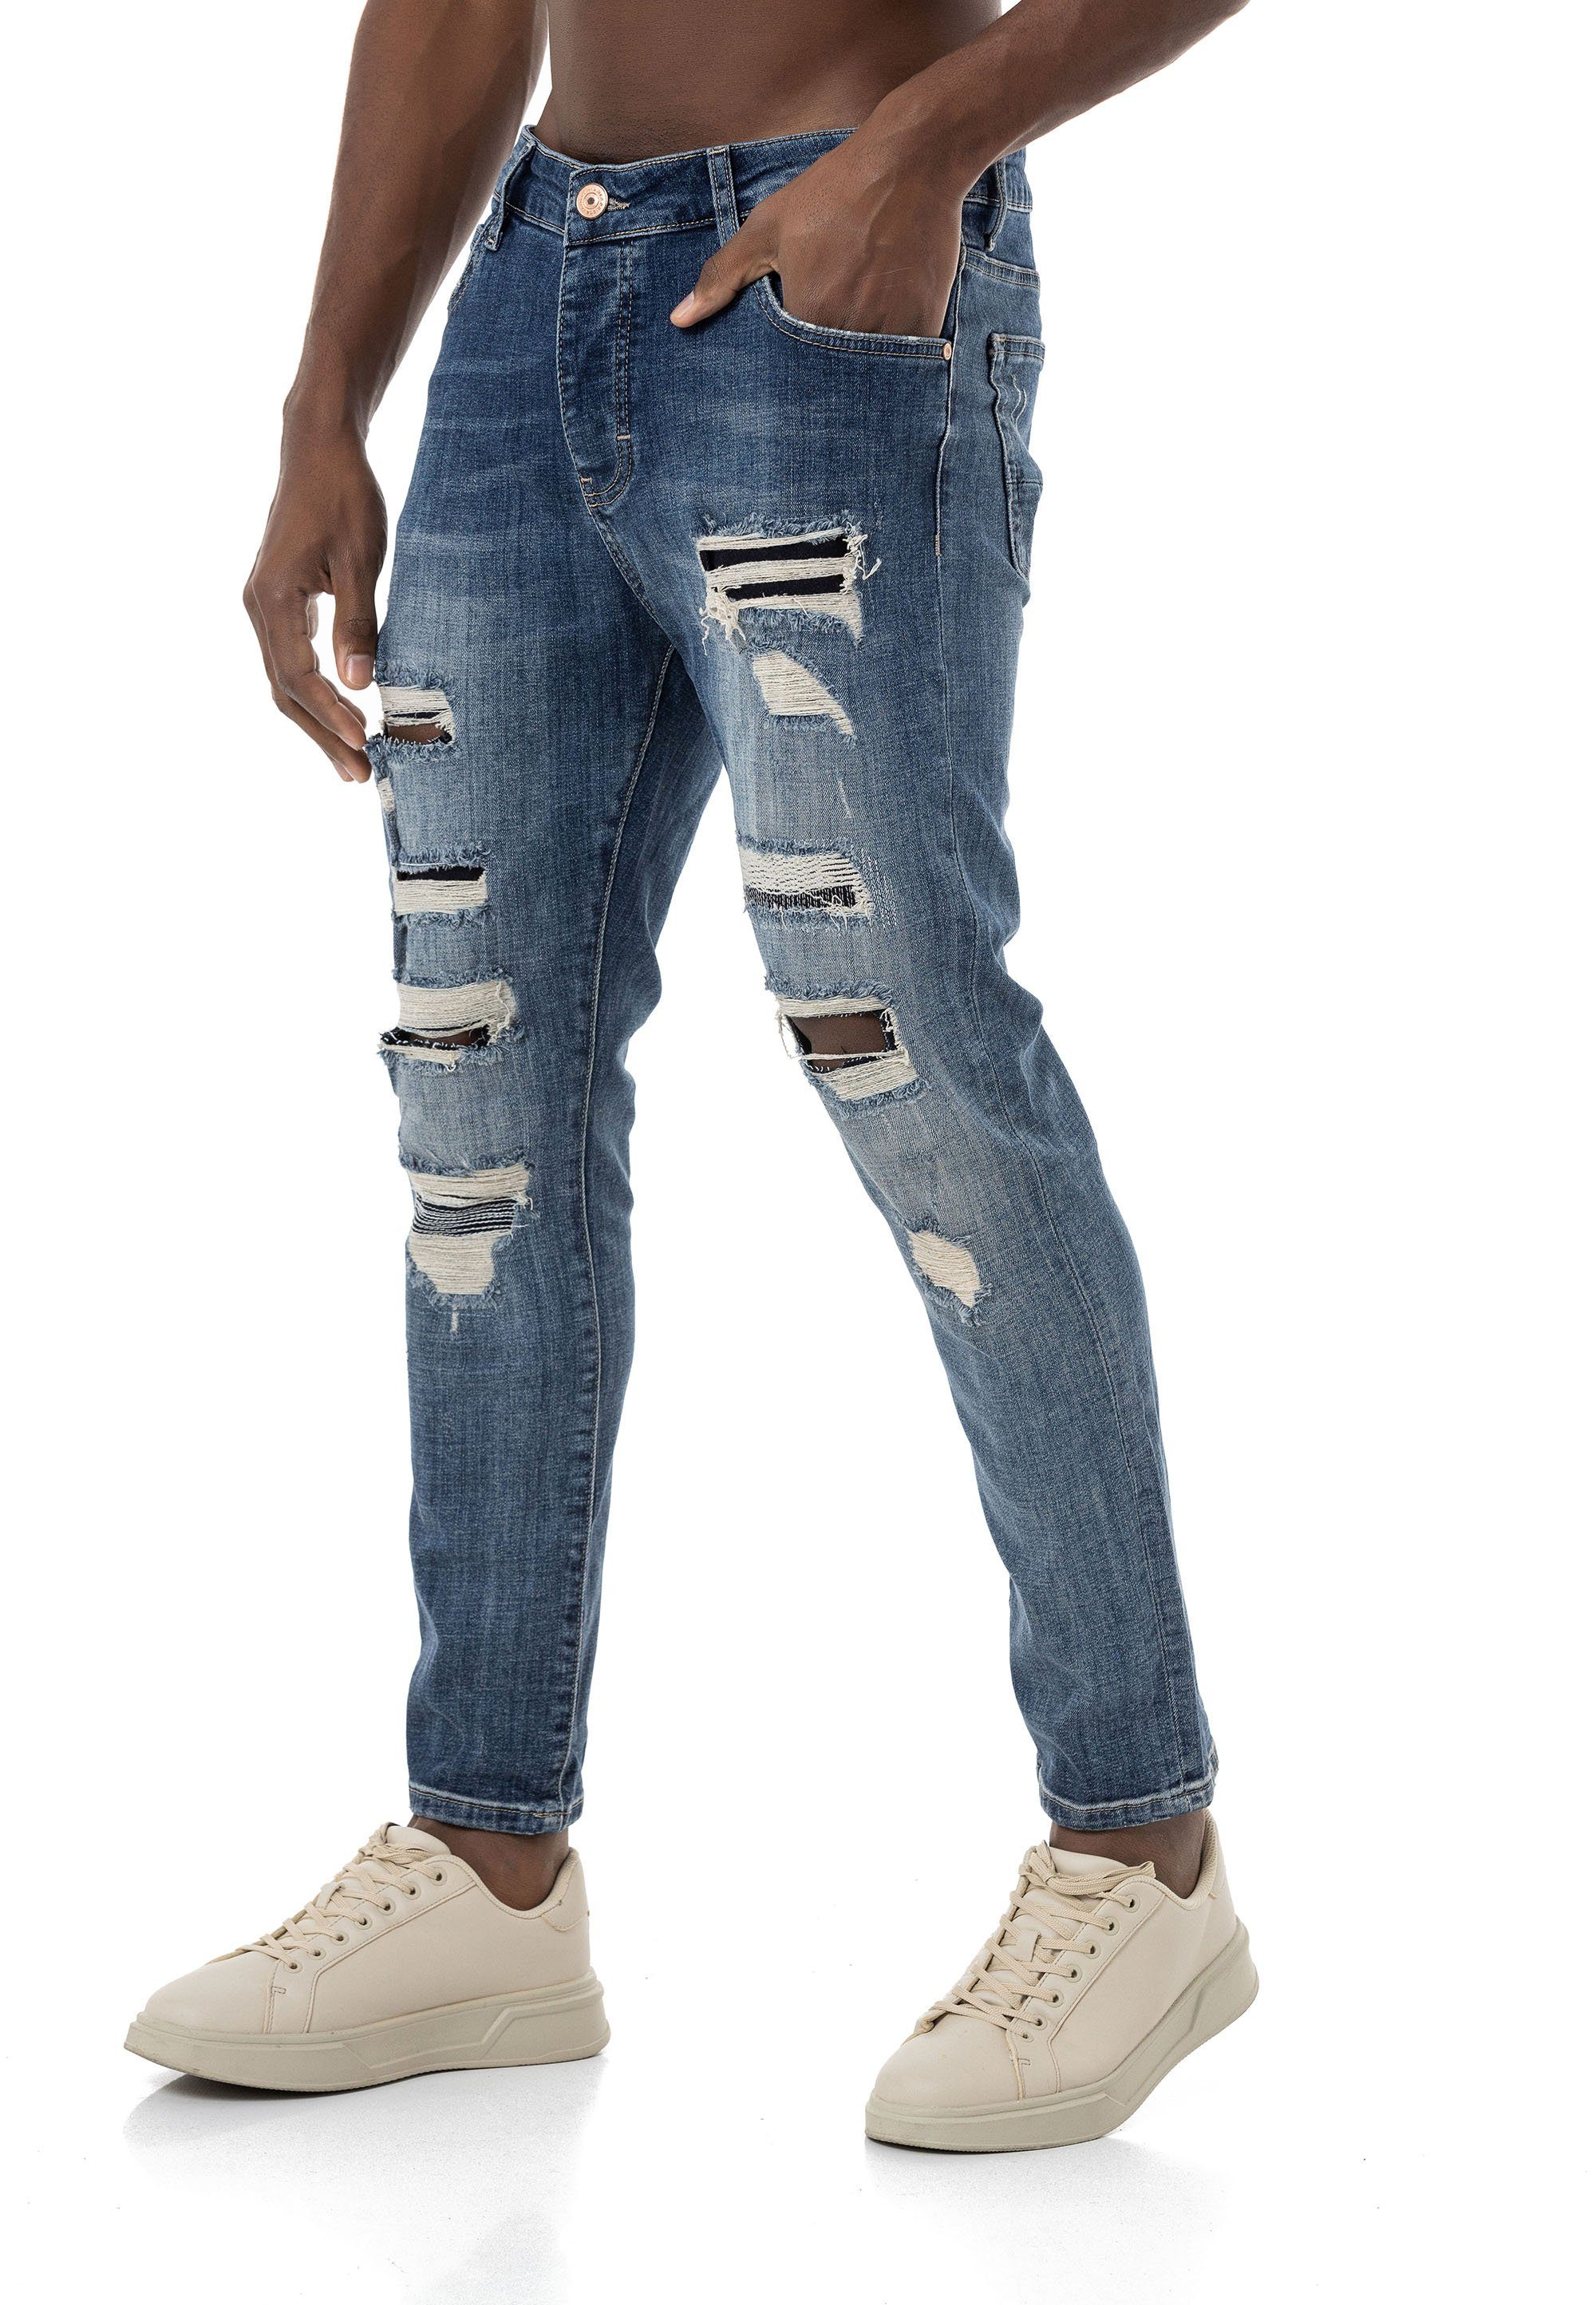 RedBridge Destroyed-Jeans lässige Denim Hose 5-Pocket-Style Blau